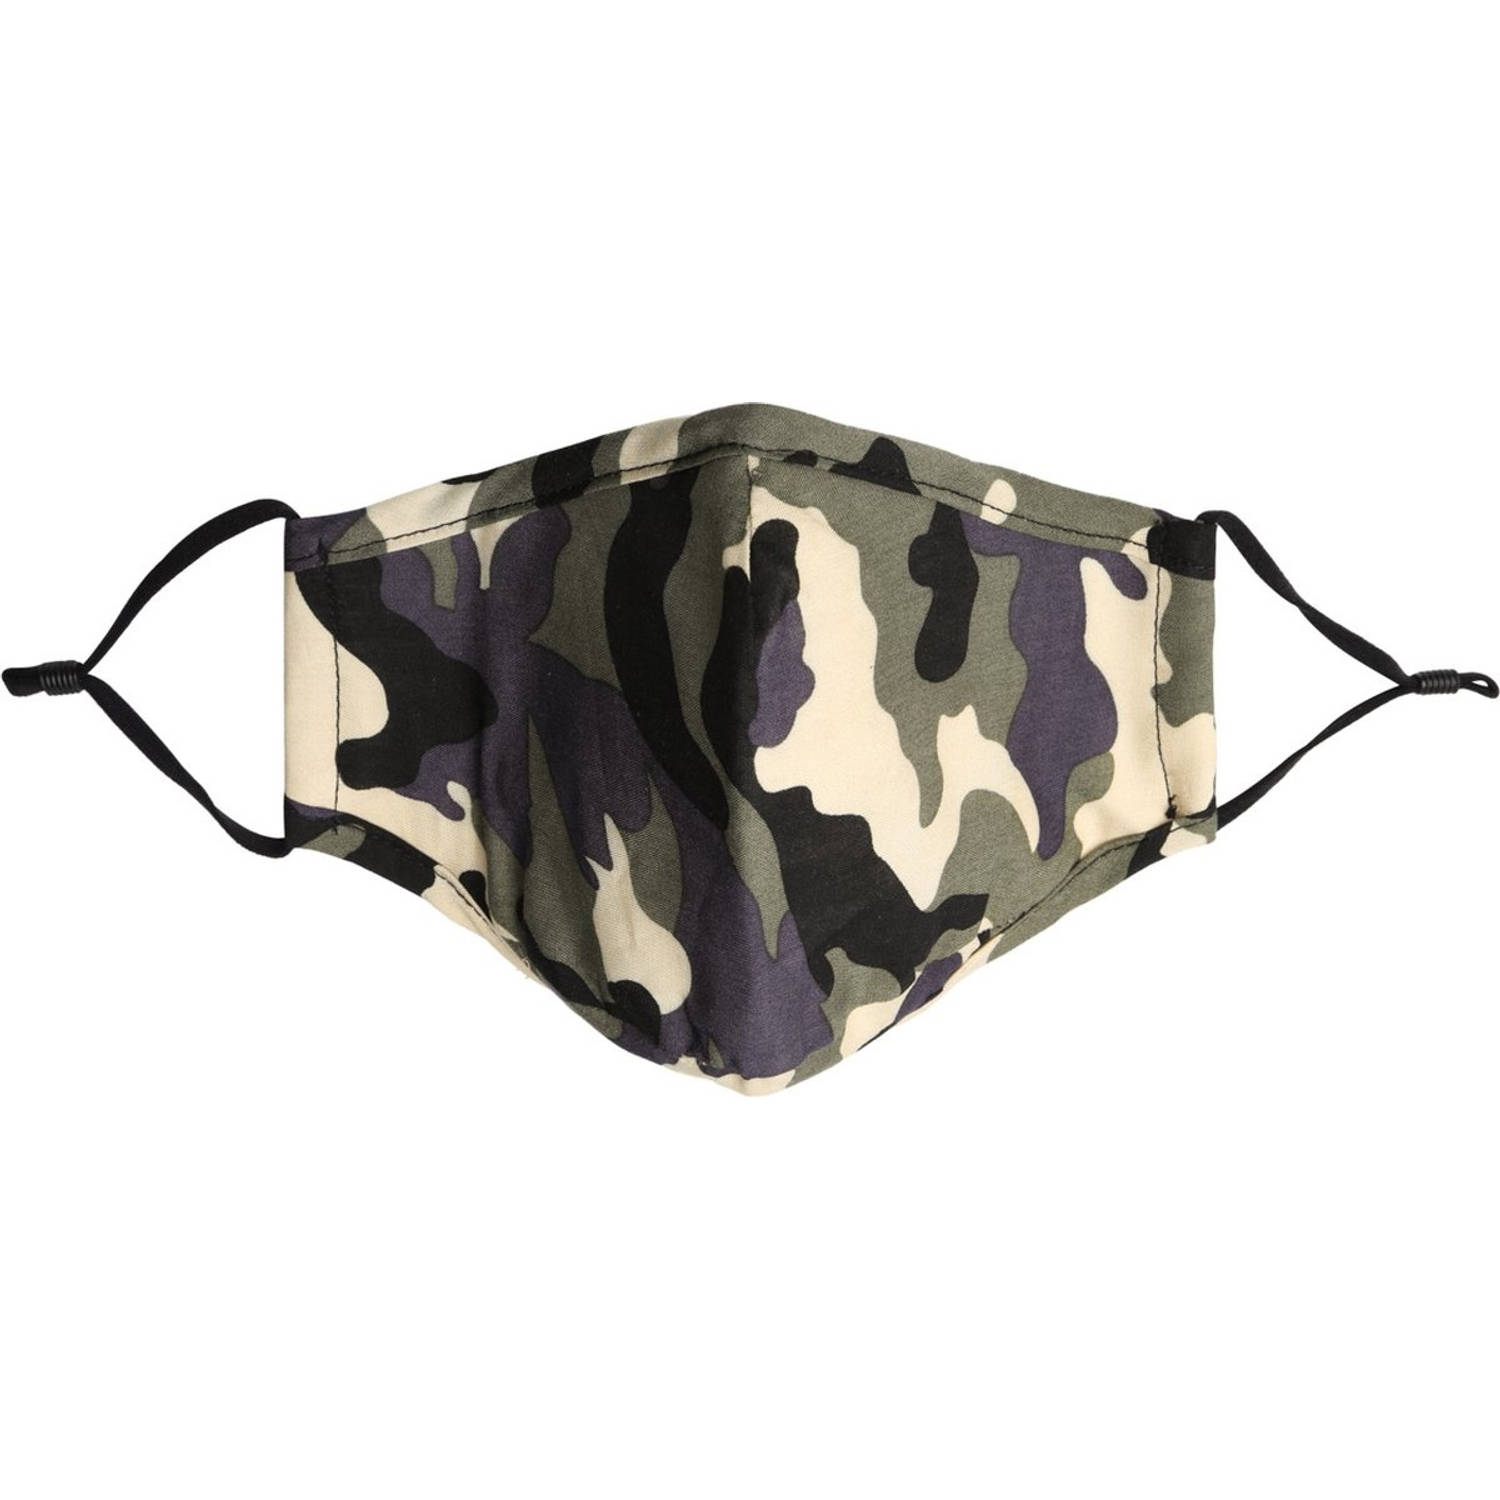 Mondkapjes / masker gezichtsmasker met oorlus wasbaar - Mondkapje Fashion camouflage - (Niet voor medisch gebruik)